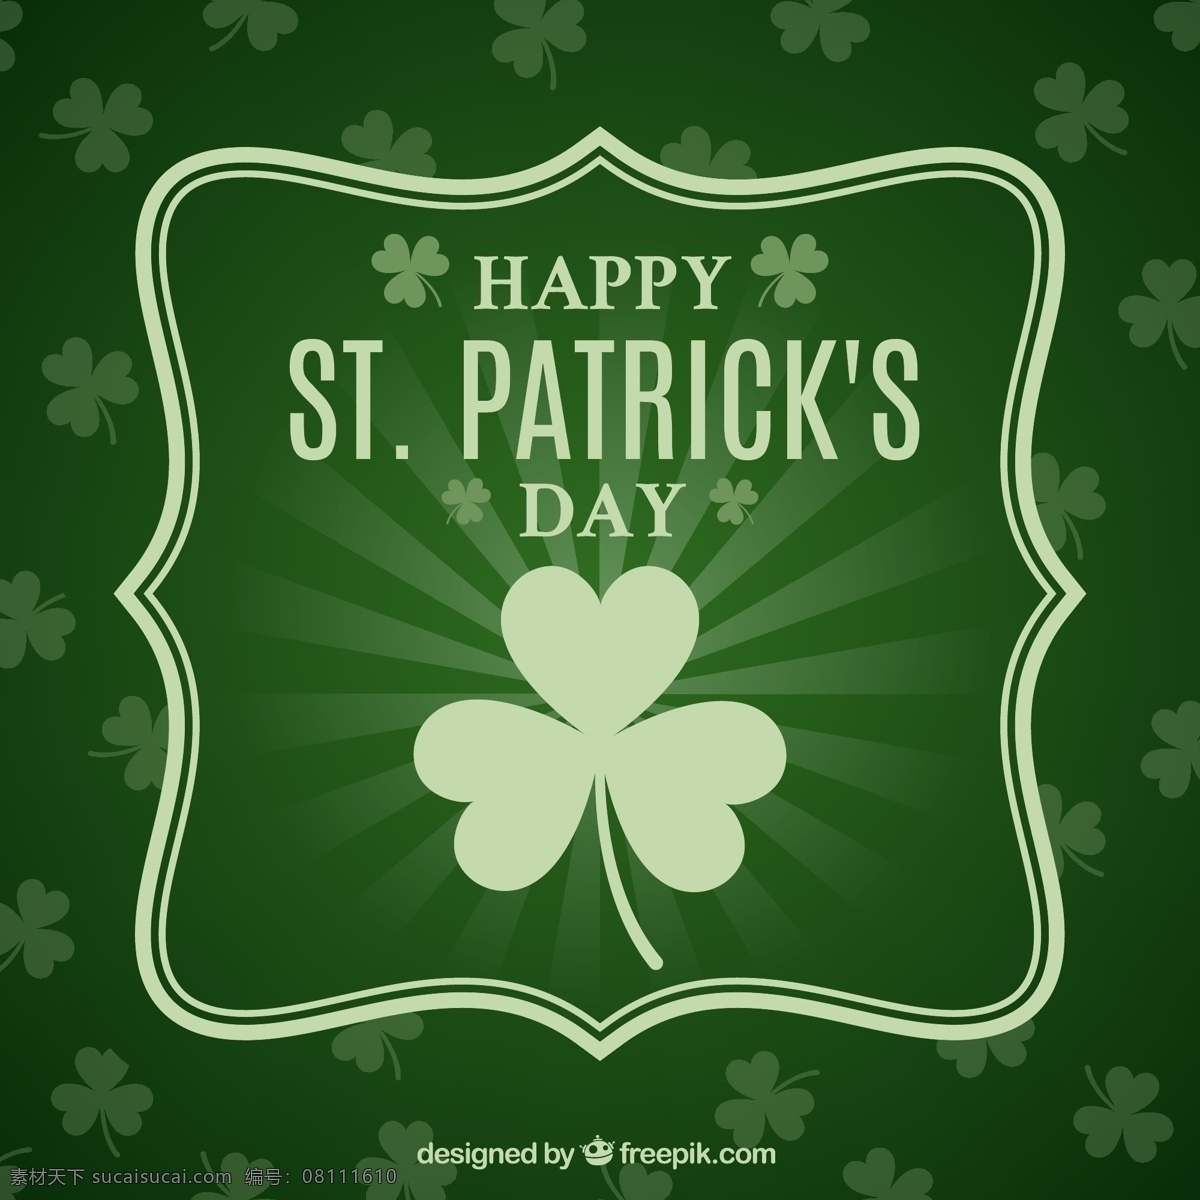 三叶草 图案 背景 绿色 庆典 节日 st 帕特里克 庆祝 贺卡 爱尔兰 问候 幸运的是 圣帕特里克 运气 水平 传统 色调